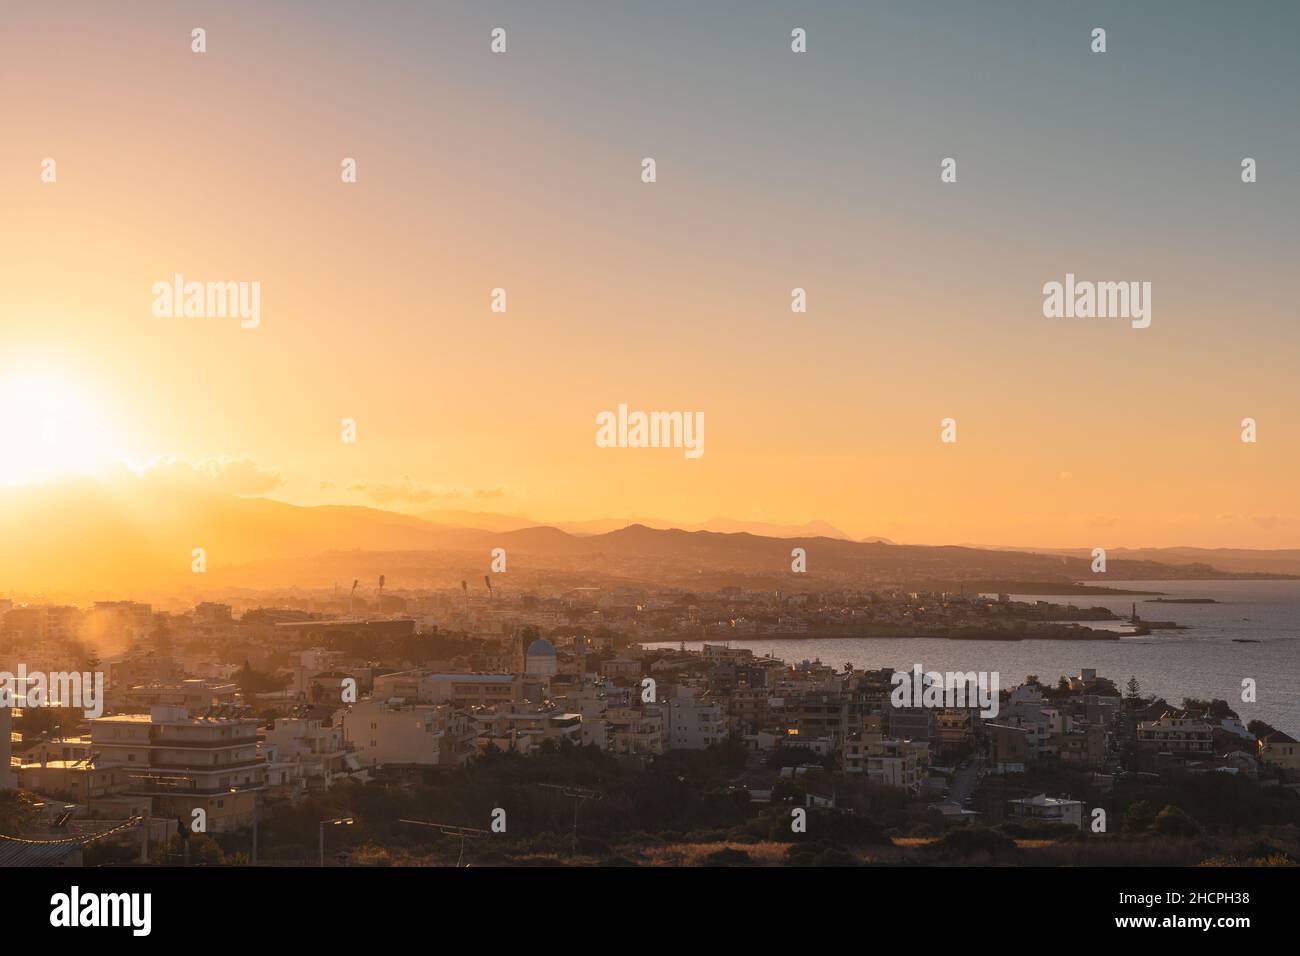 Wunderschöner Sonnenuntergang über der venezianischen Altstadt von Chania, Kreta Island - Griechenland Stockfoto